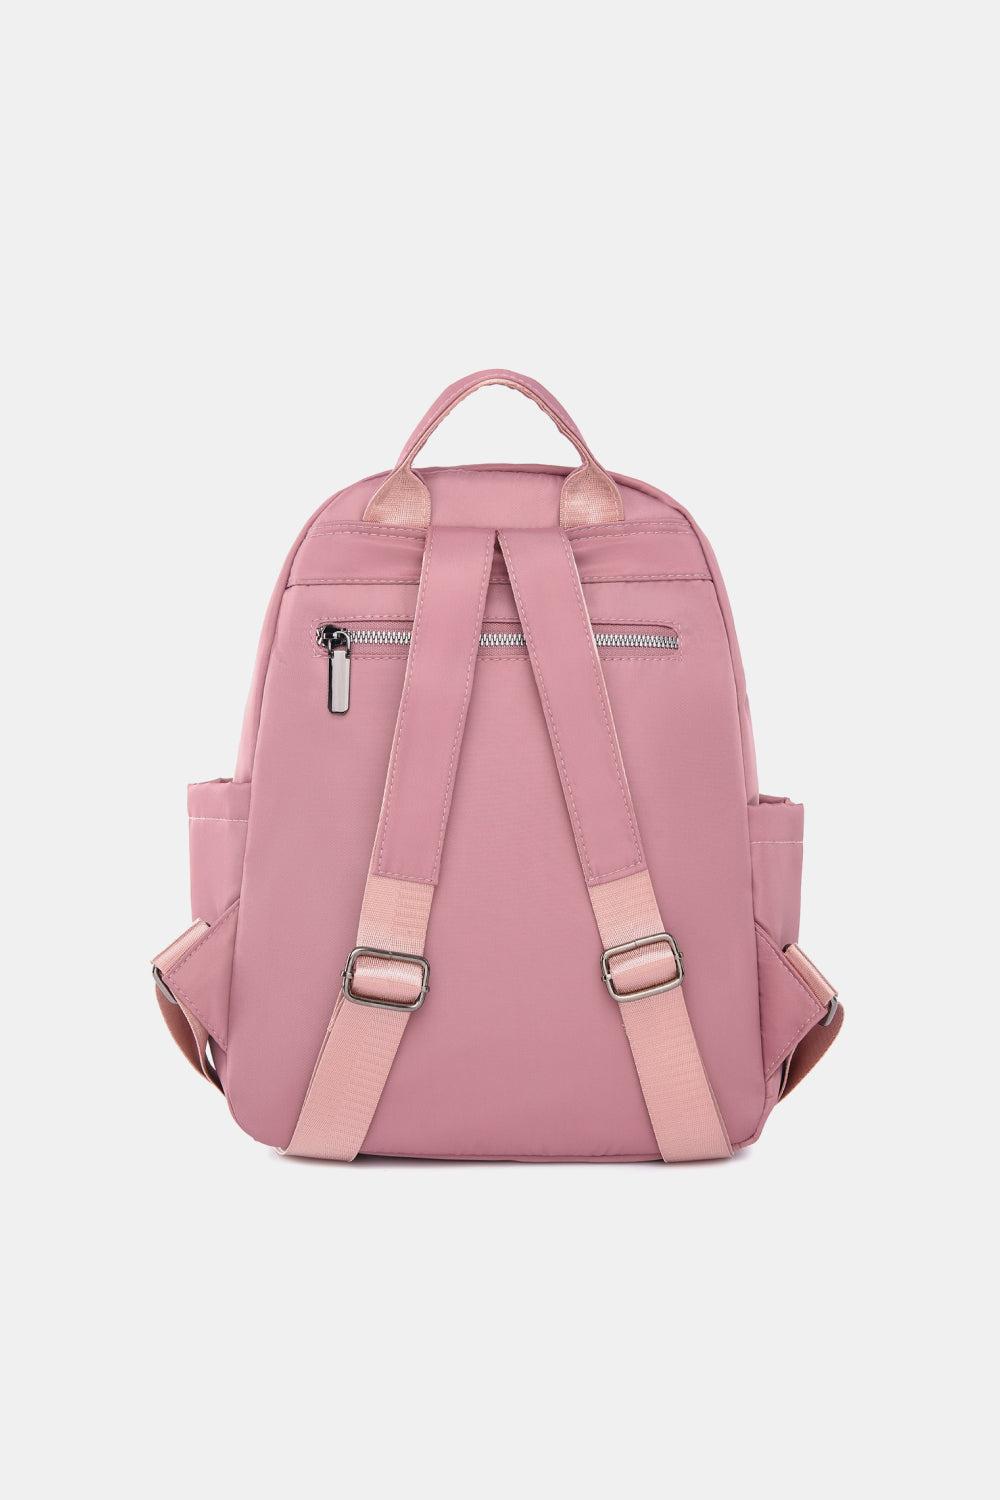 Medium Nylon Backpack - Handbag - FITGGINS